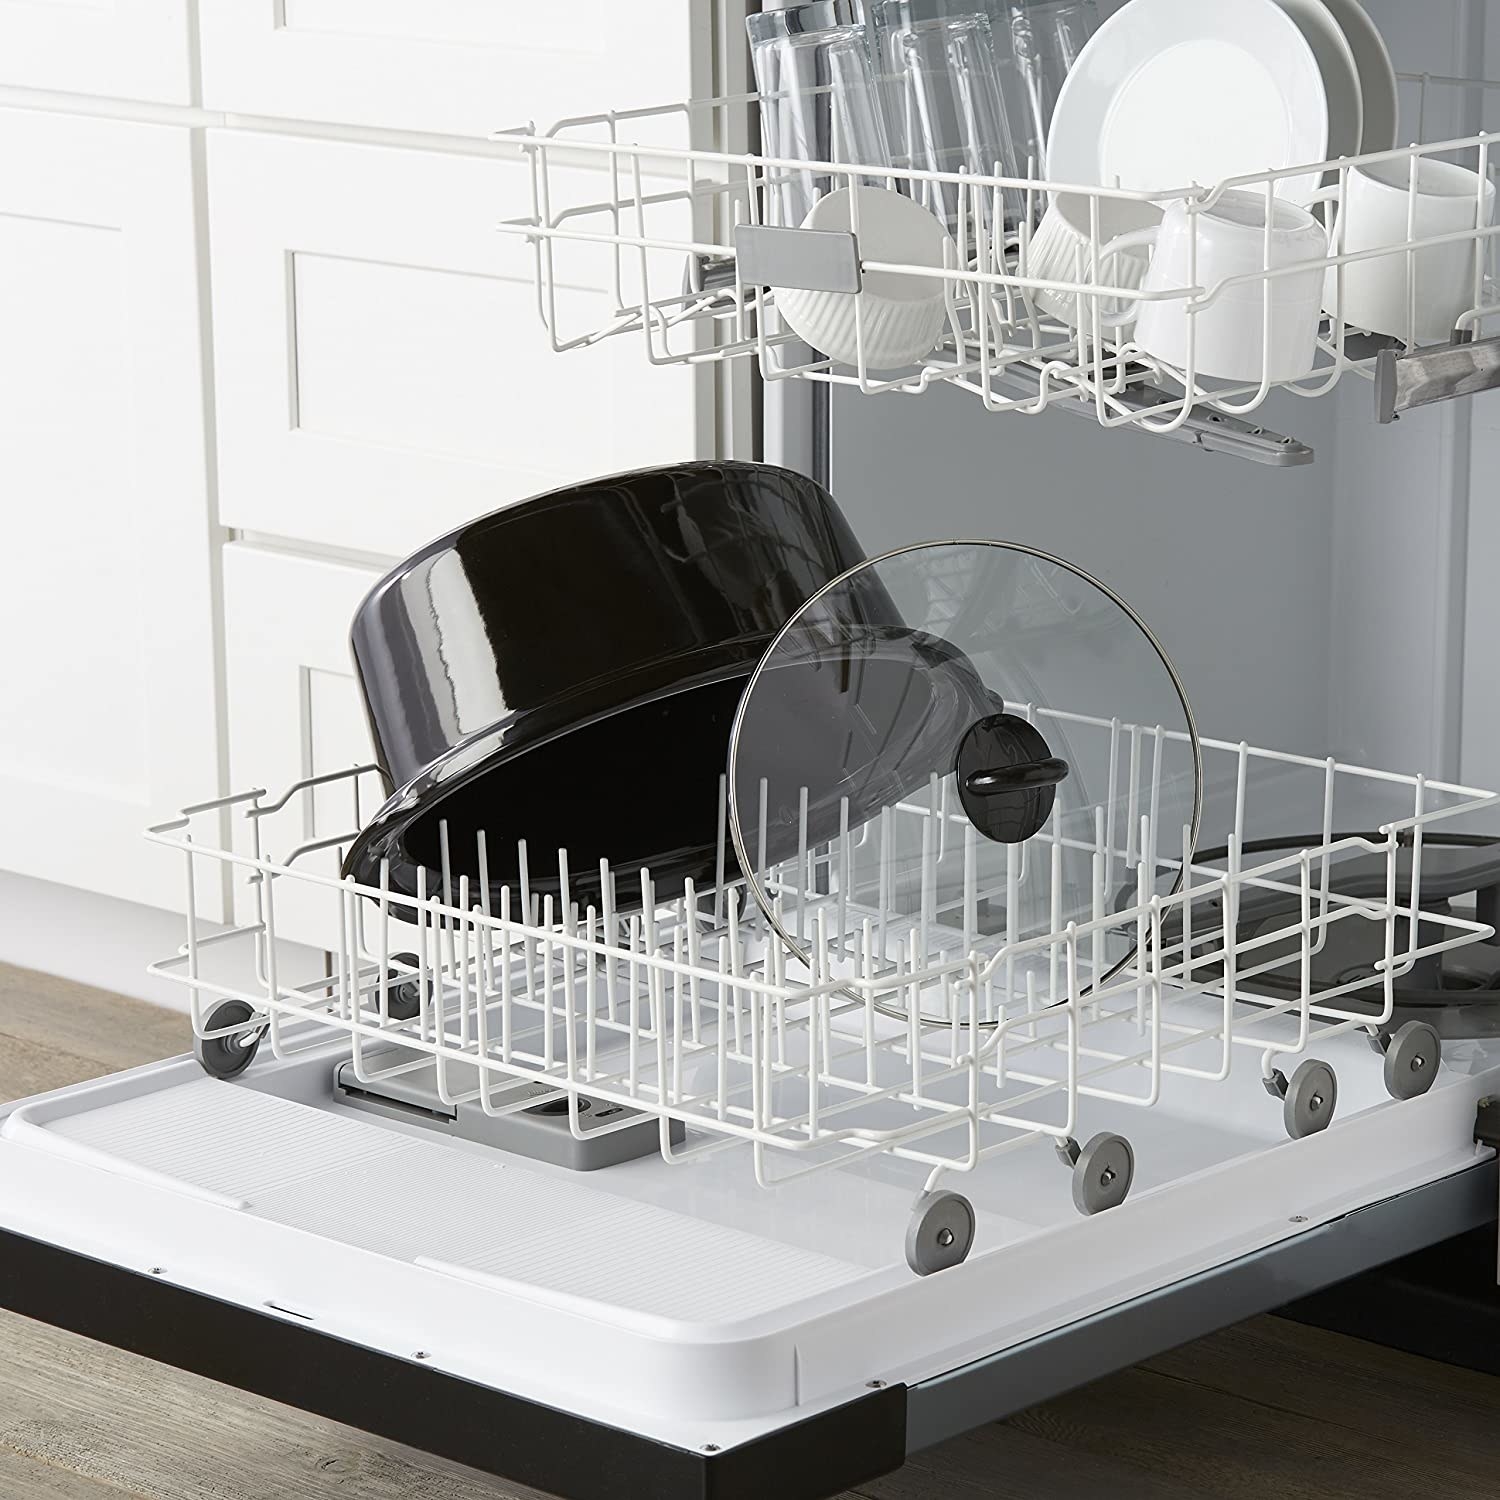 慢炖锅炻器插入和洗碗机的盖子